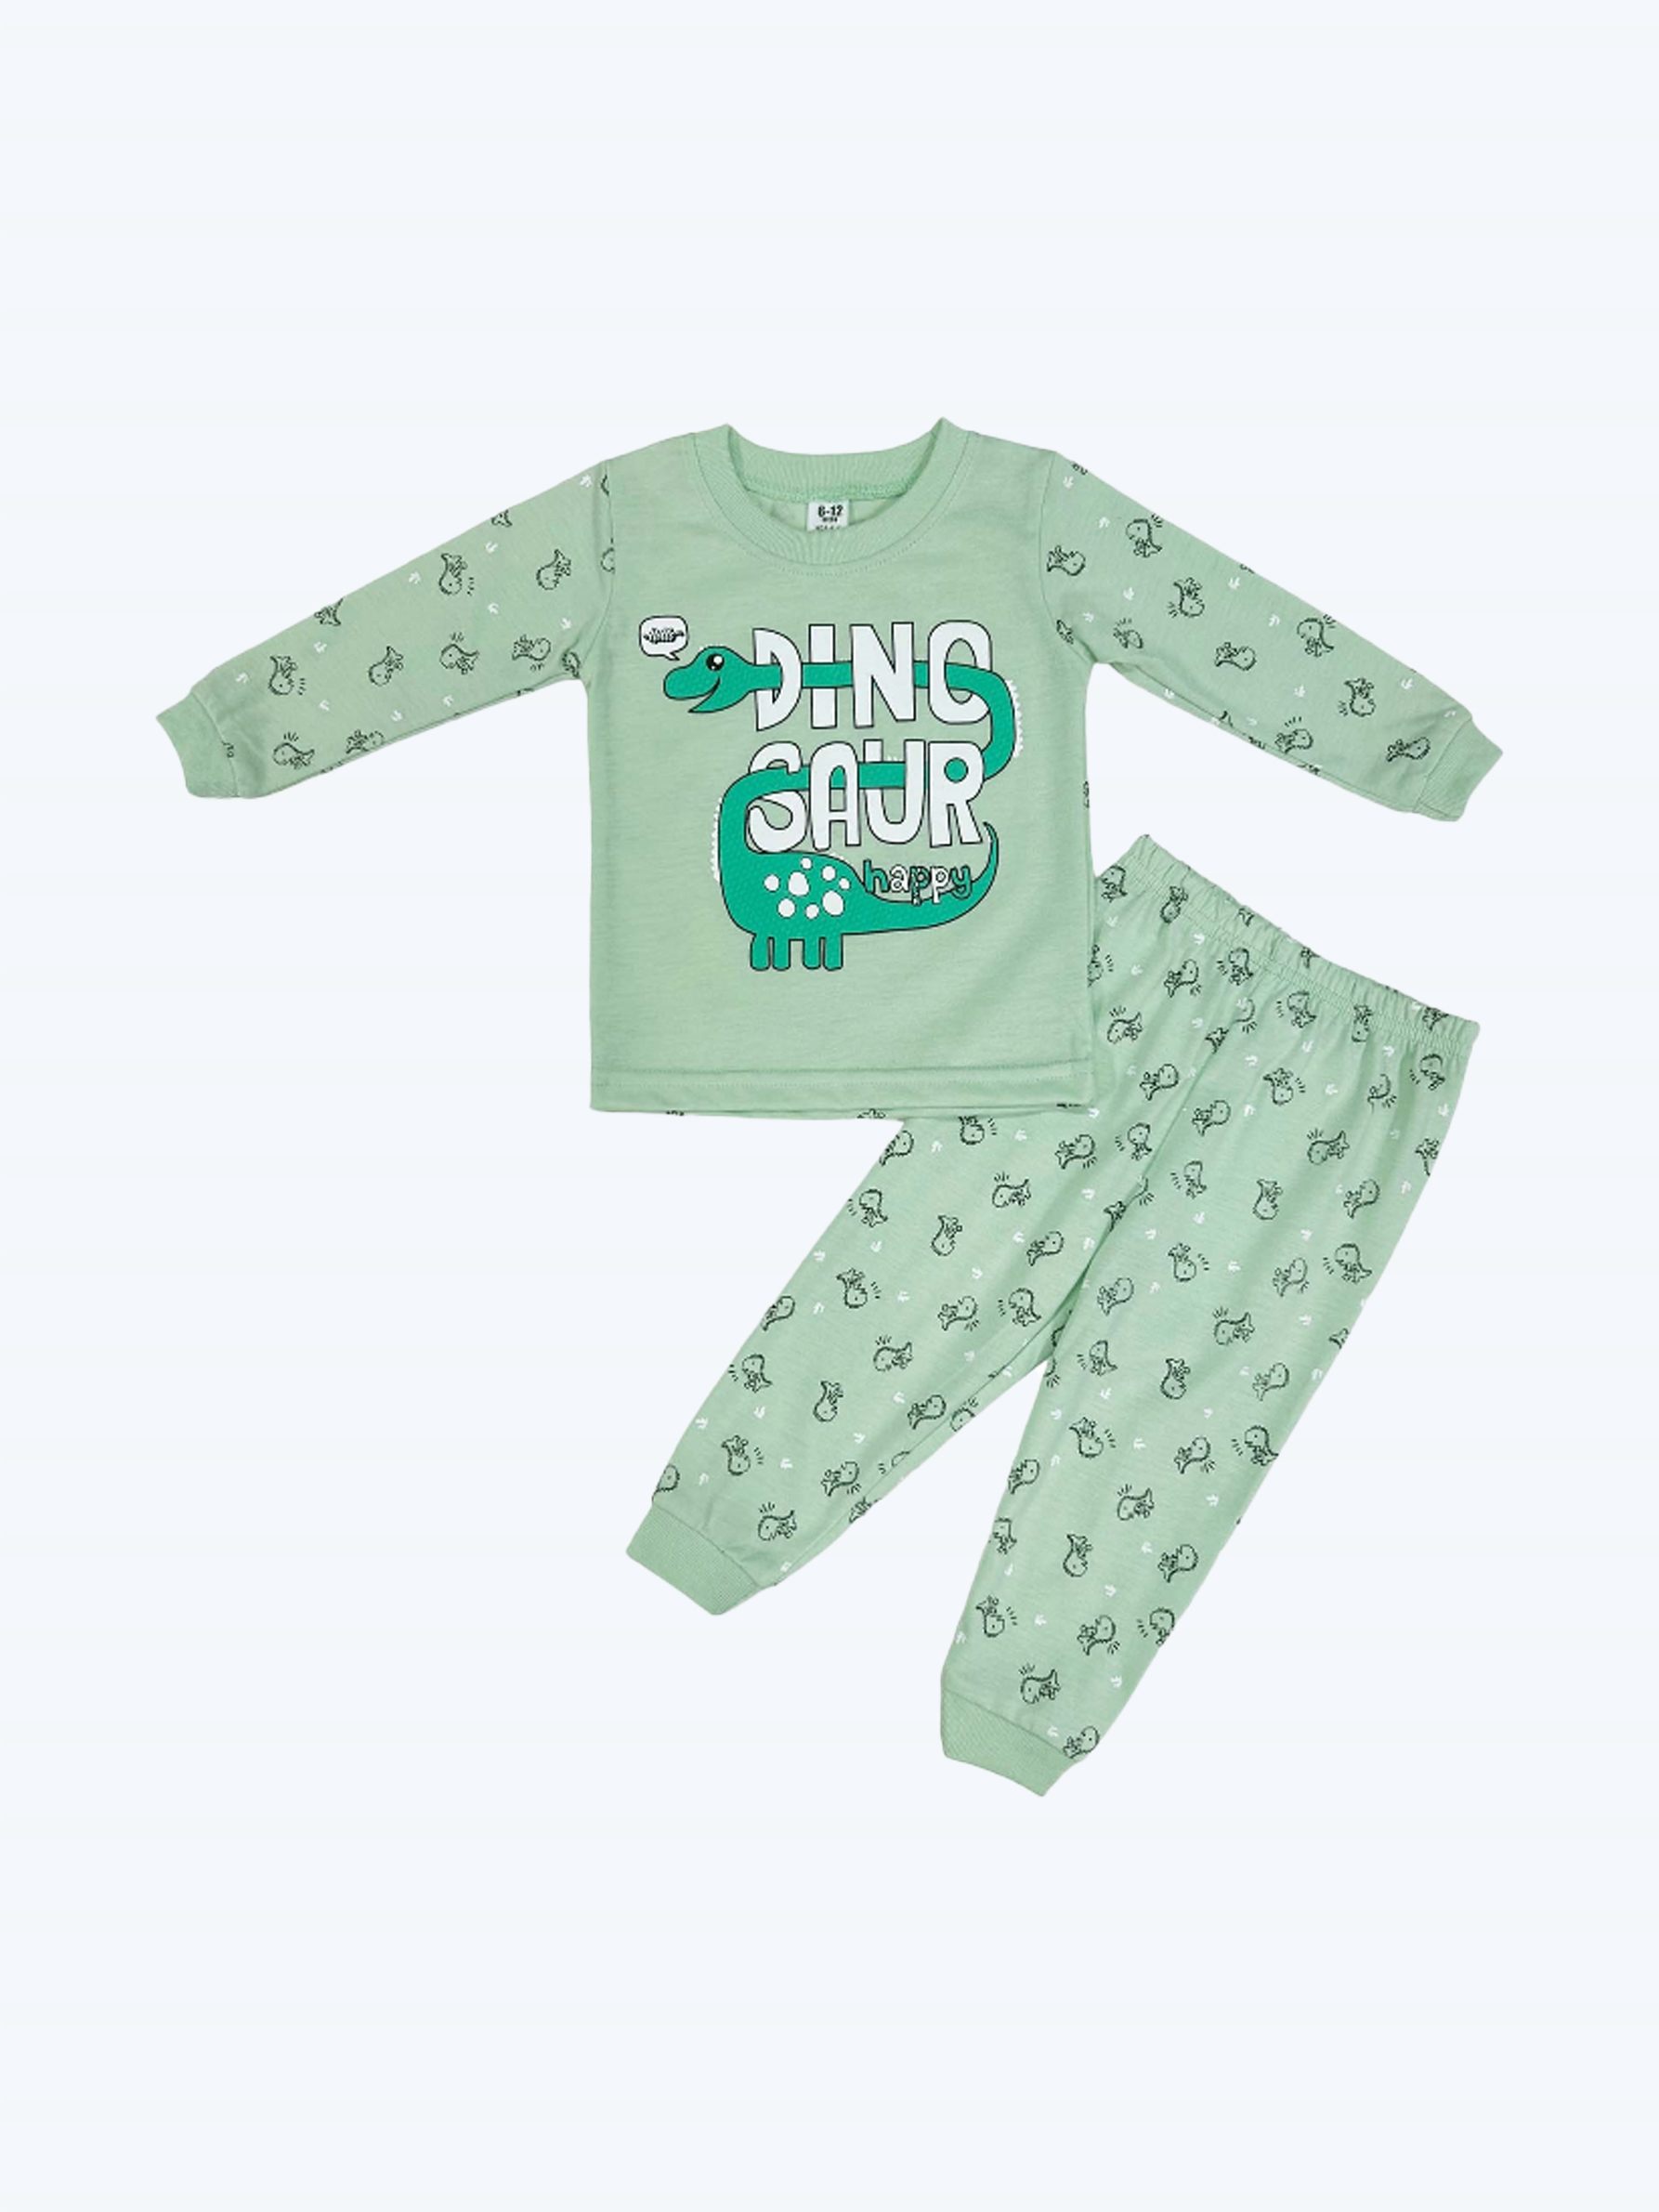 Kikilala Baby Pyjamas Long Sleeves PJB267-KIKILALA